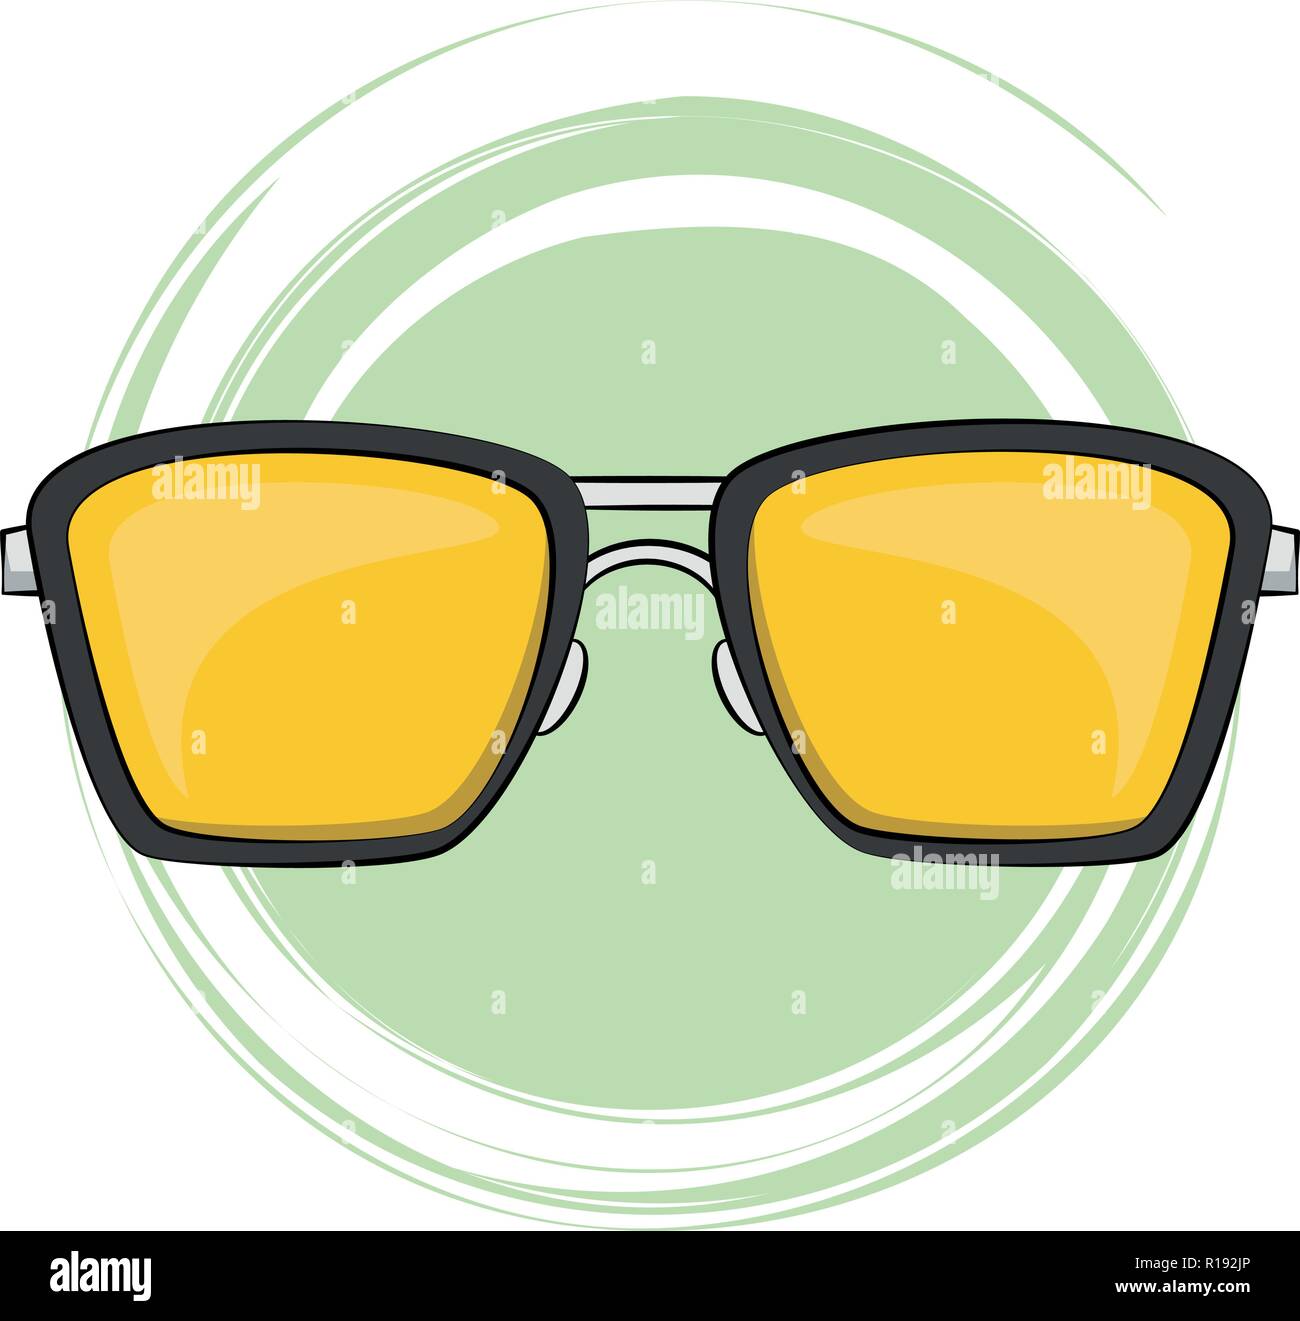 Sommer Sonnenbrille cartoon Vector Illustration graphic design Stock Vektor